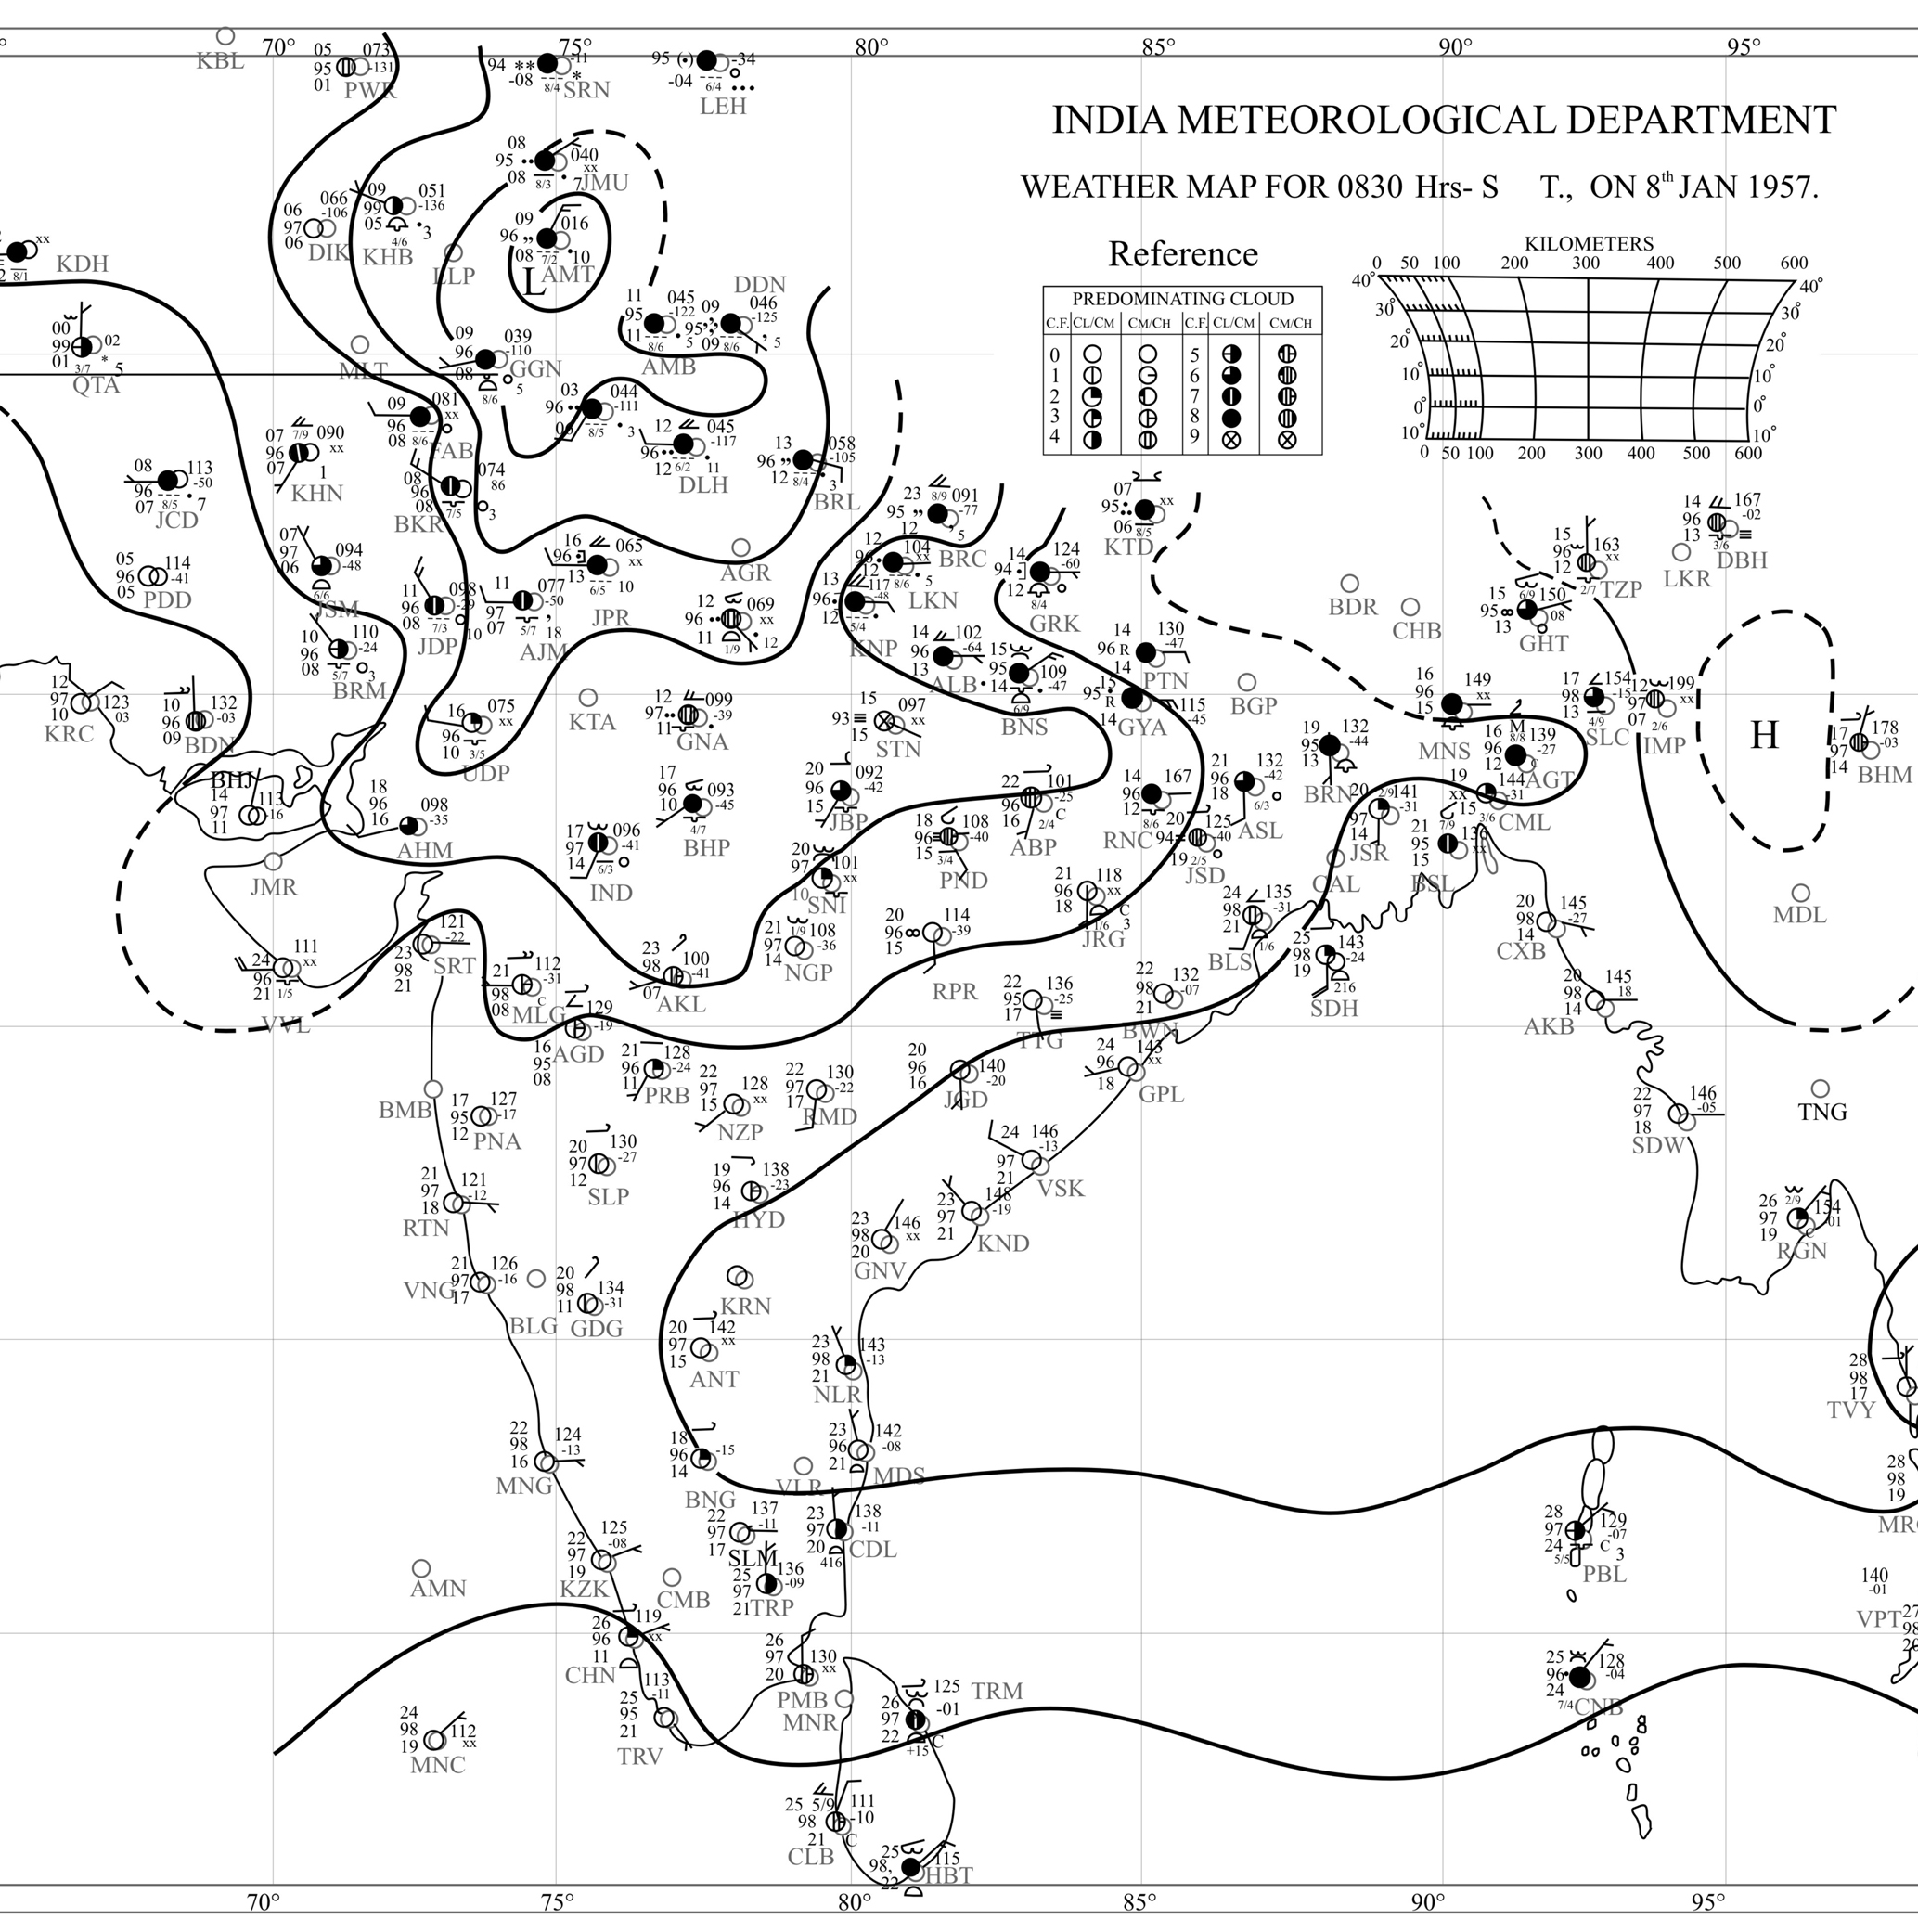 आ. ३. भारत व आसपपसचा प्रेदश या क्षेत्राचे विश्र्लेषण केलेला भूपृष्ठीय हवामान नकाशाचा एक नमुना